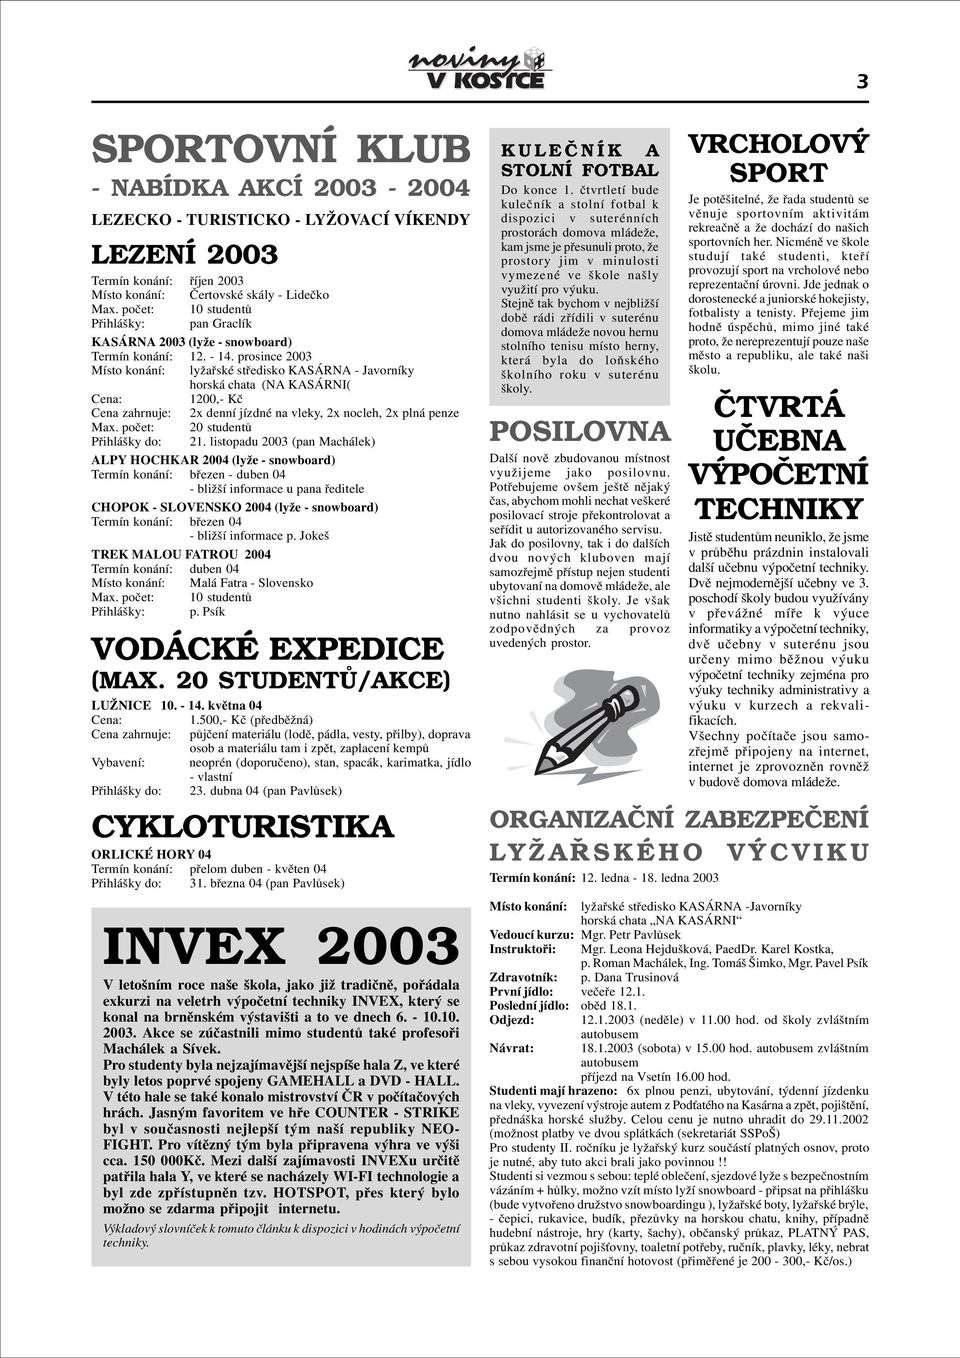 prosince 2003 Místo konání: lyžaøské støedisko KASÁRNA - Javorníky horská chata (NA KASÁRNI( Cena: 1200,- Kè Cena zahrnuje: 2x denní jízdné na vleky, 2x nocleh, 2x plná penze Max.